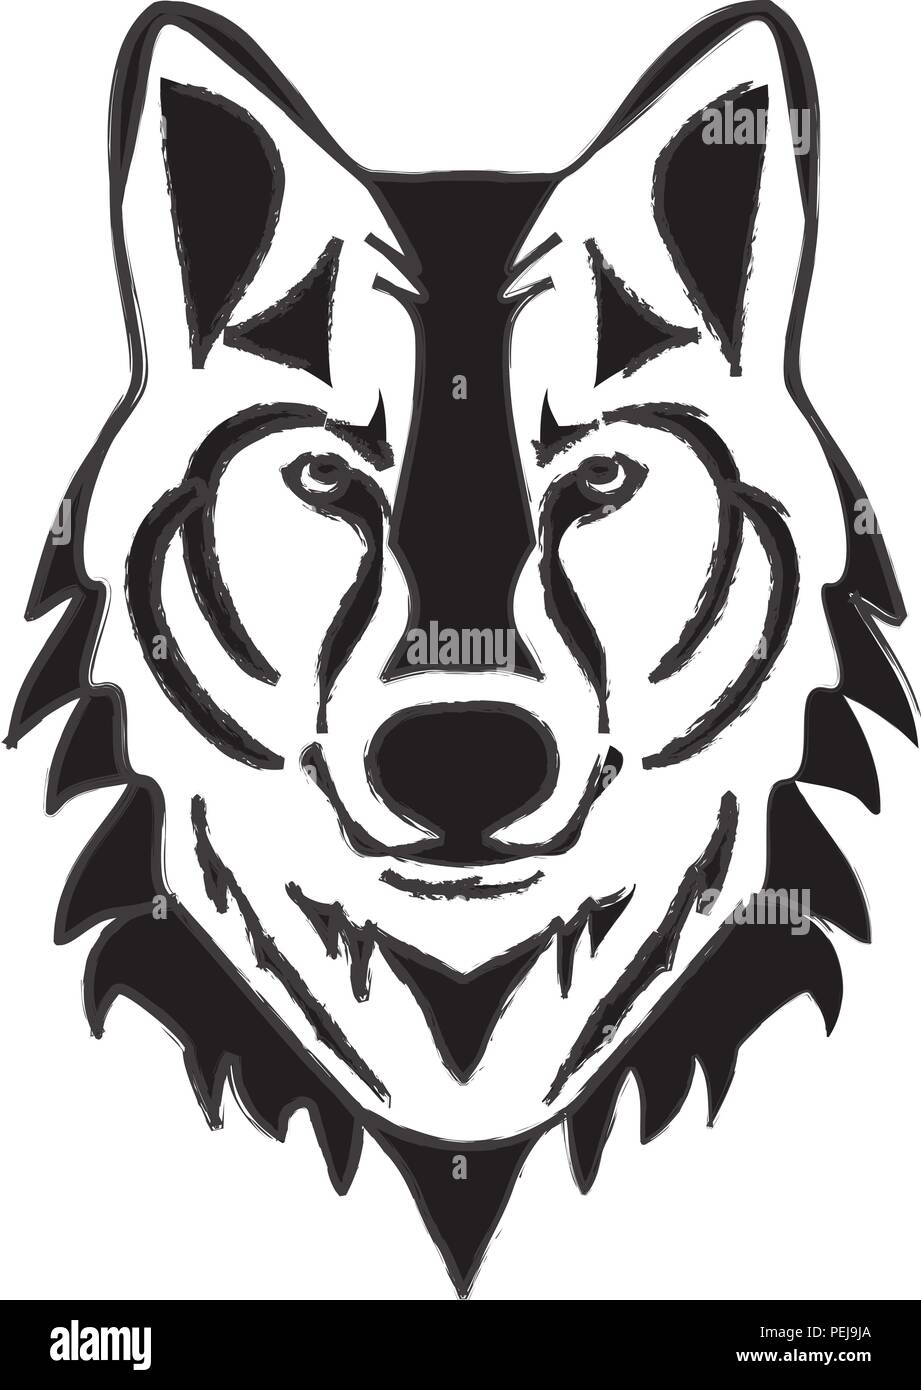 Illustrazione vettoriale di una testa di lupo silhouette Illustrazione Vettoriale